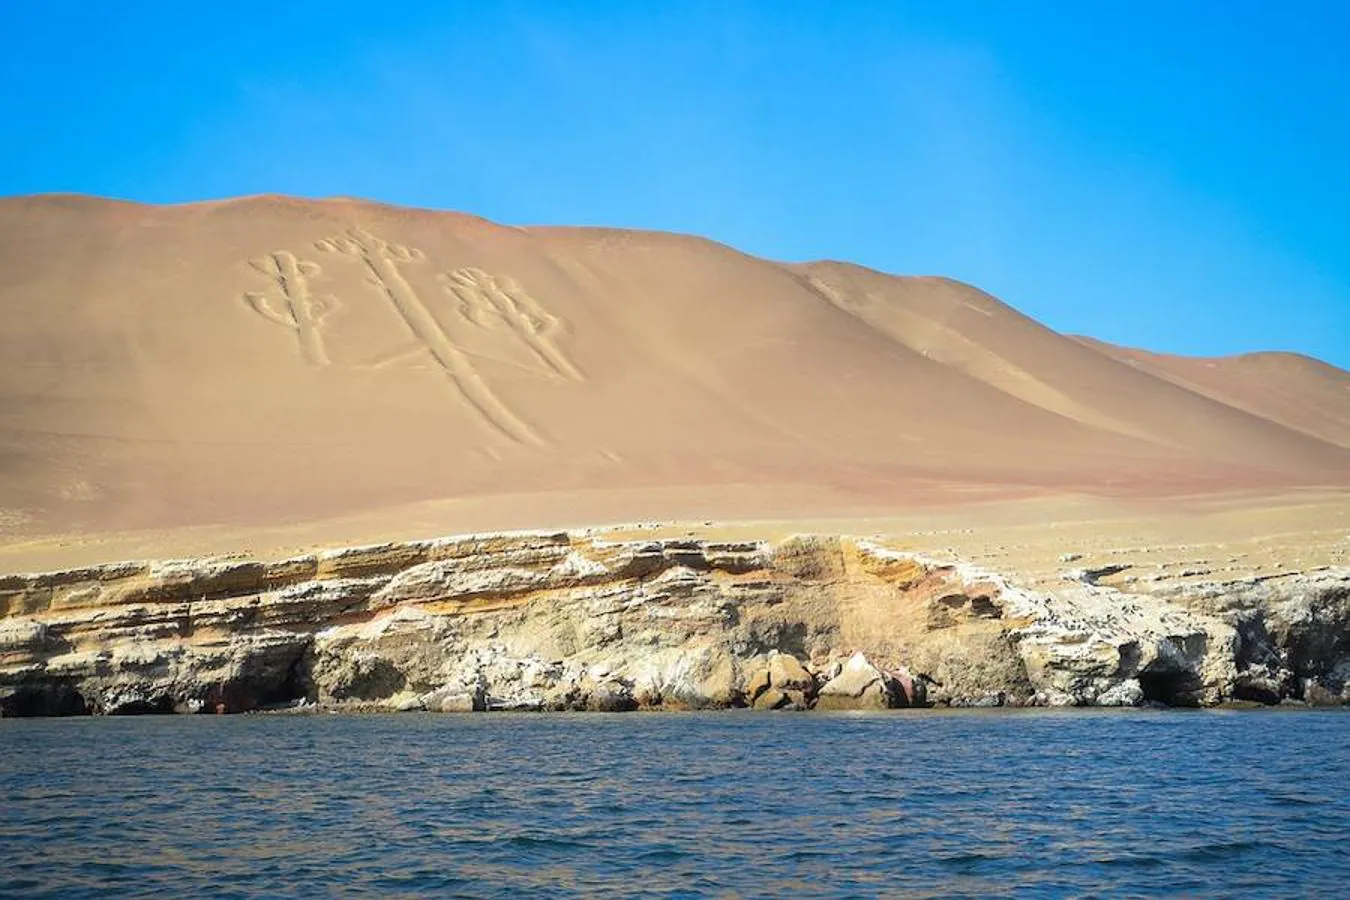 Los acantilados del mar de Paracas se pueden localizar dentro de los límites de la Reserva Nacional de la península, que se extiende a lo largo de la costa central de Perú.